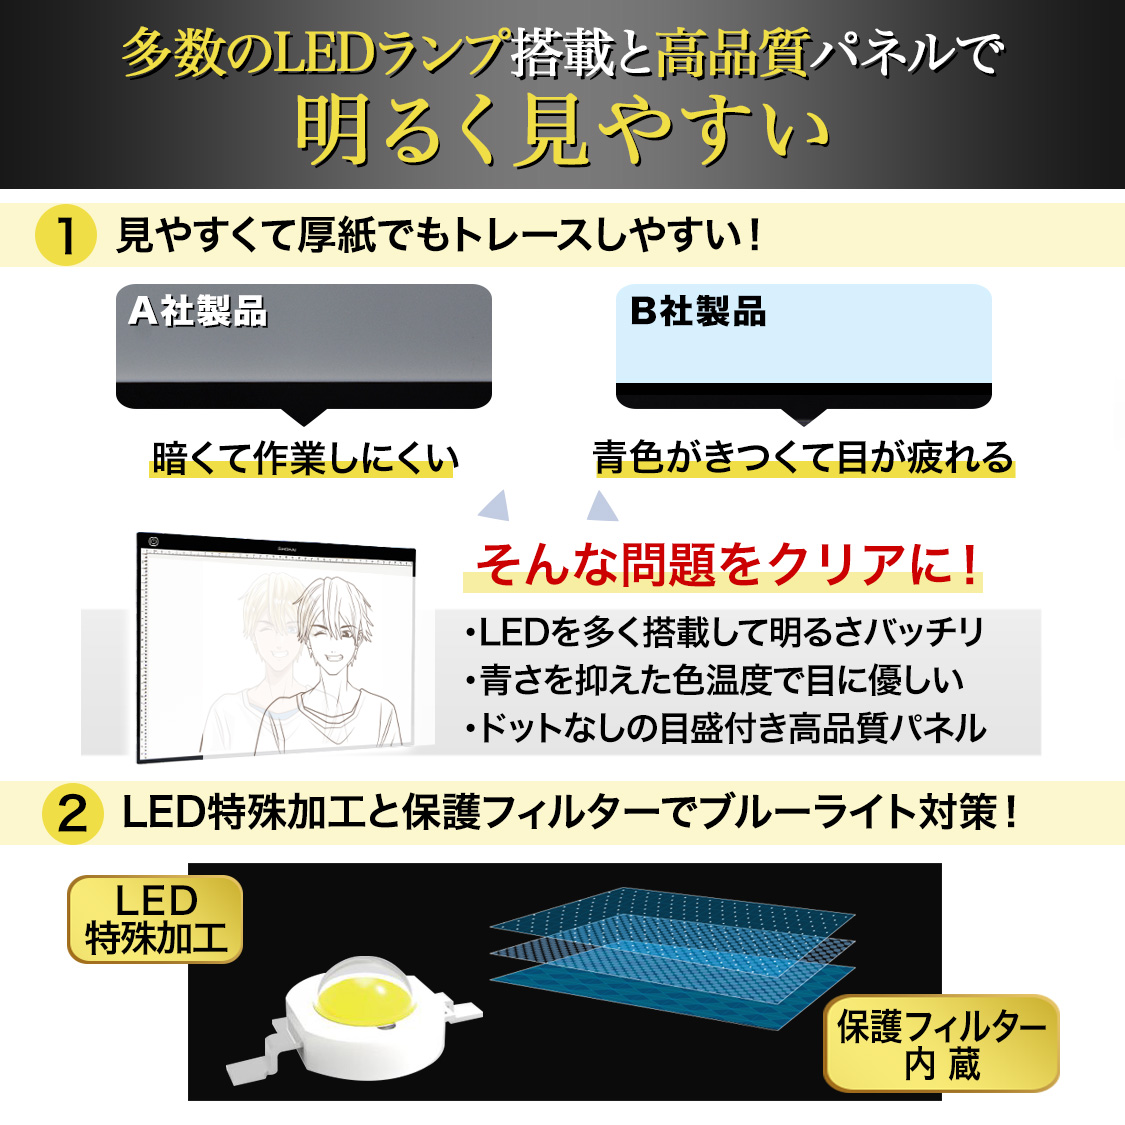  подставка под кальку A3 Pro рекомендация модель нет -ступенчатый style свет свет настольный светильник box Takumi .